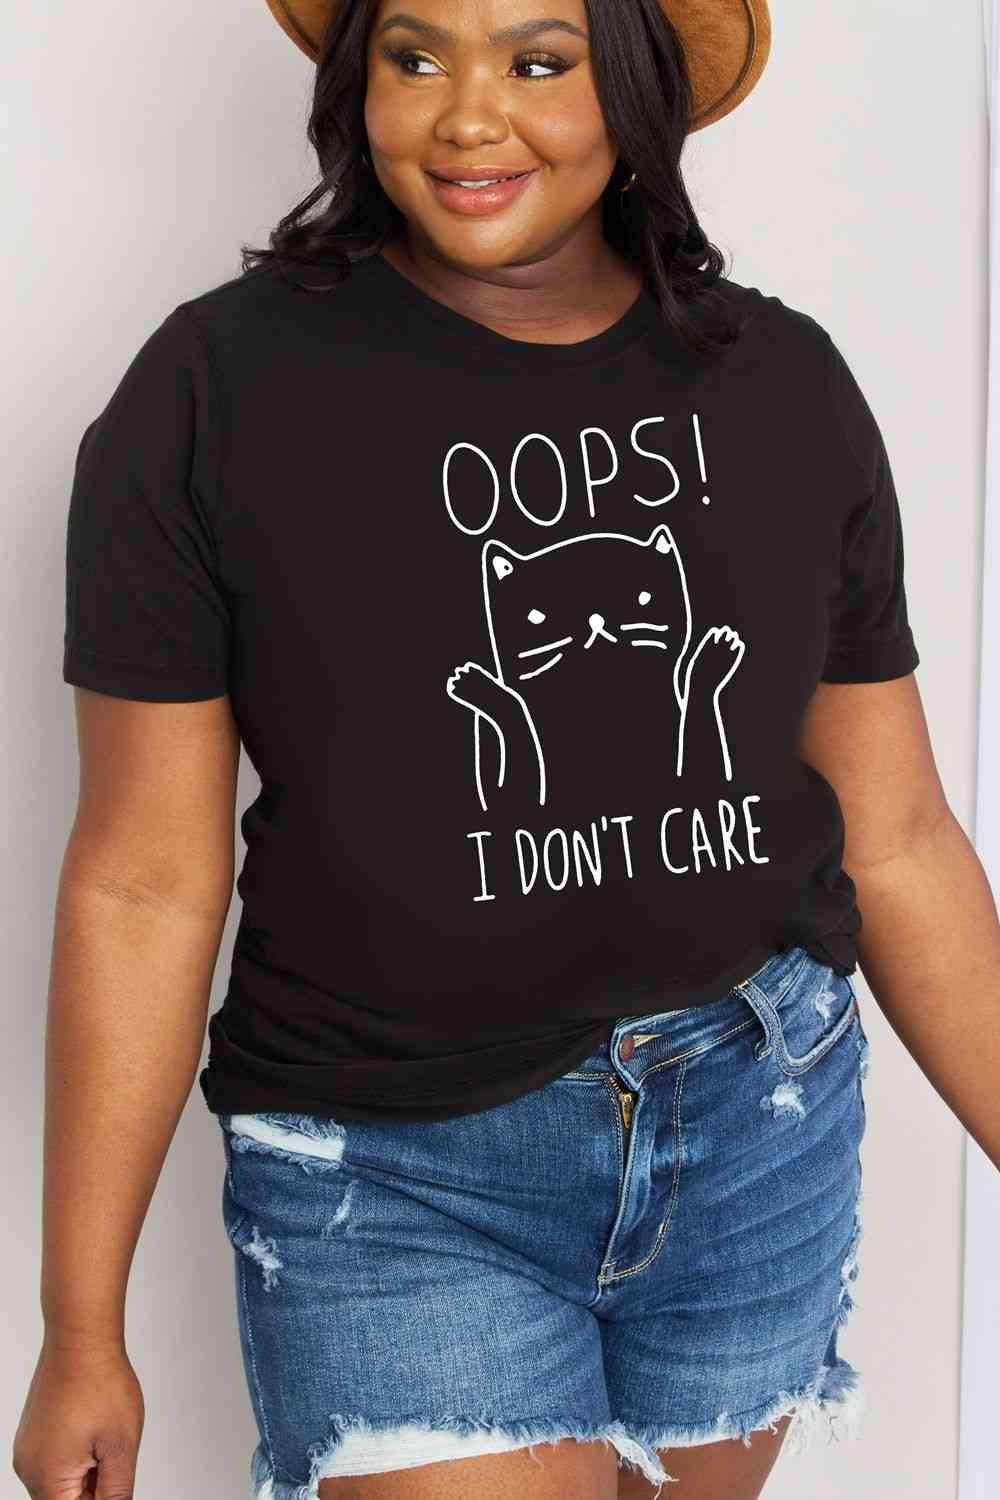 Camiseta de algodón con gráfico OOPS I DON'T CARE de tamaño completo de Simply Love